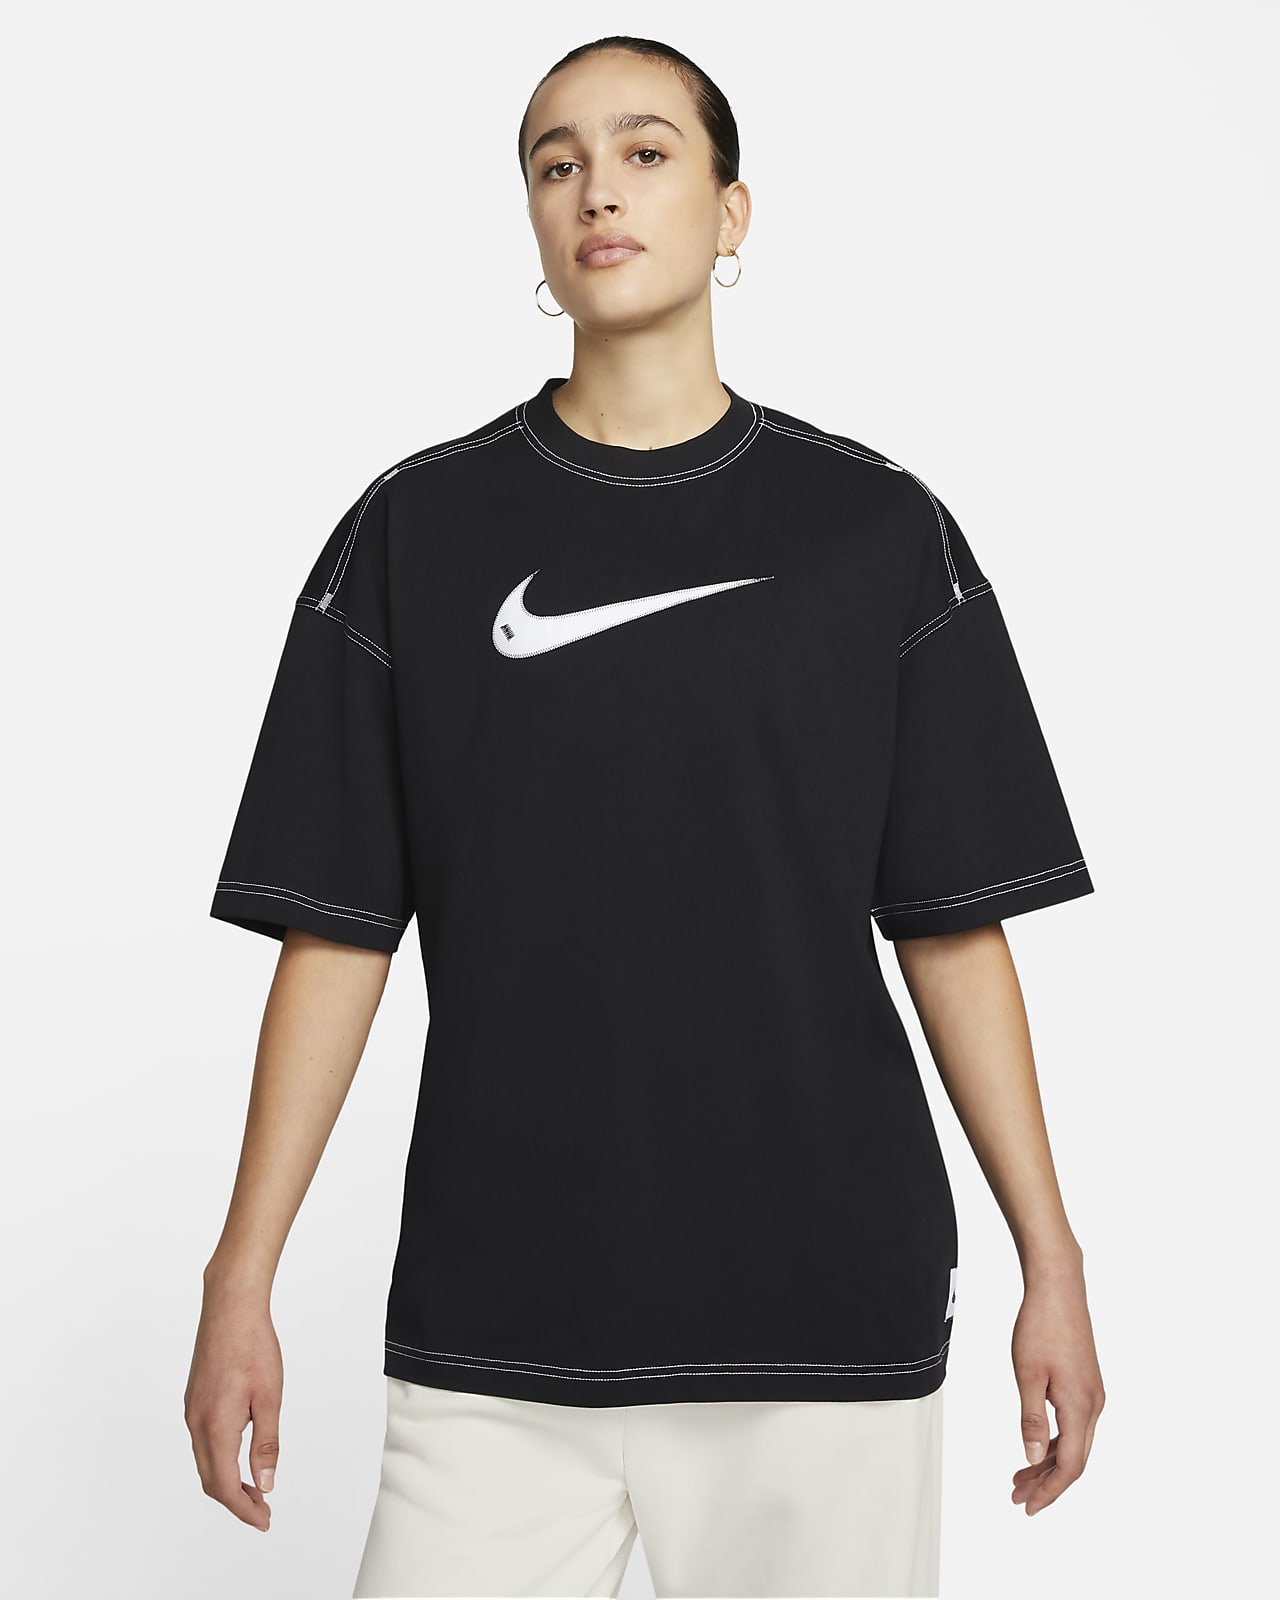 Verzakking Raad Dusver Nike Sportswear Swoosh Women's Short-Sleeve Top. Nike LU